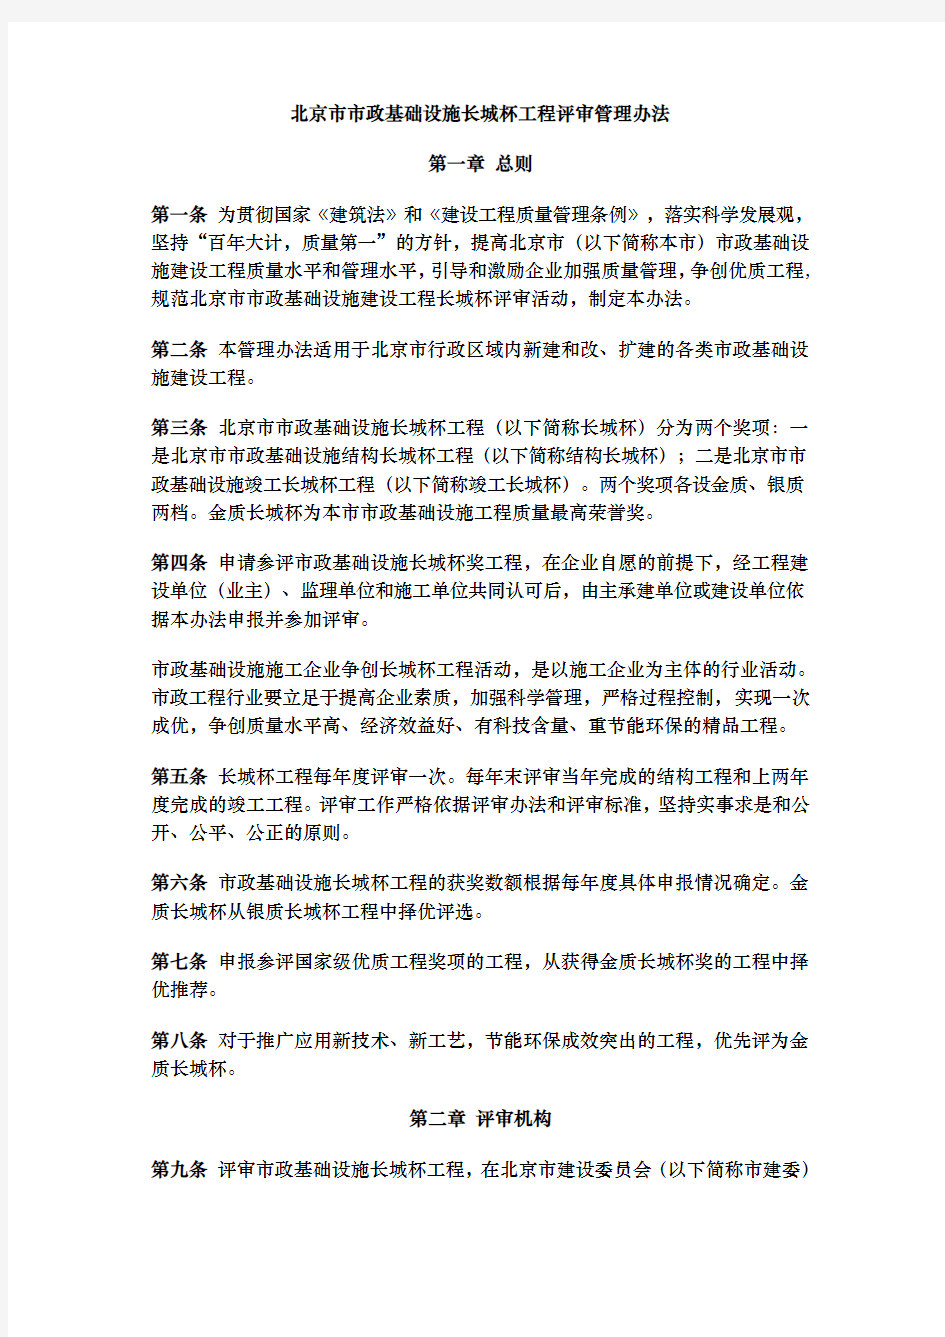 北京市政基础设施长城杯工程评审管理办法